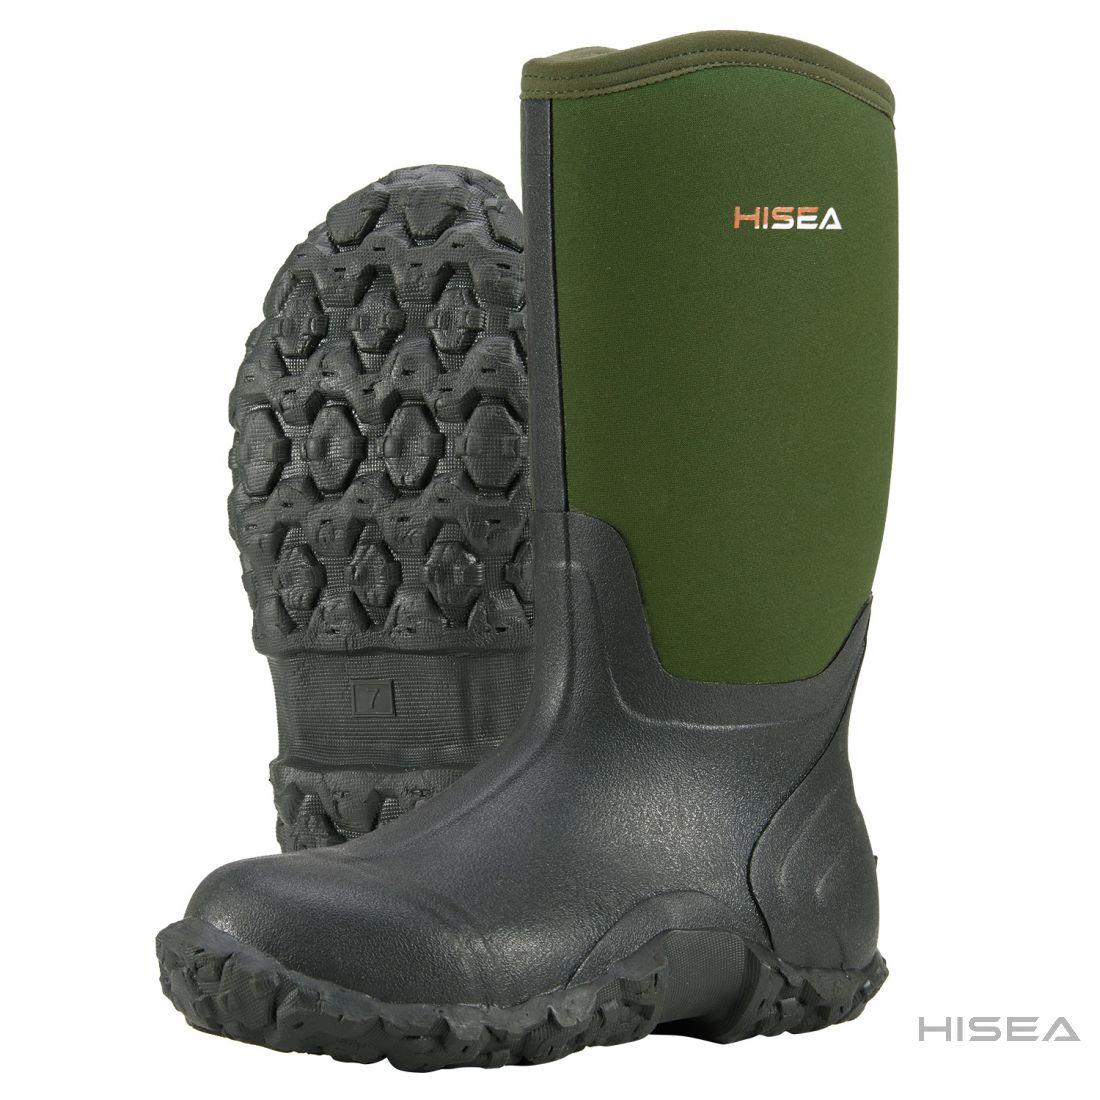 Men's Mid-Calf Rain Boots | HISEA